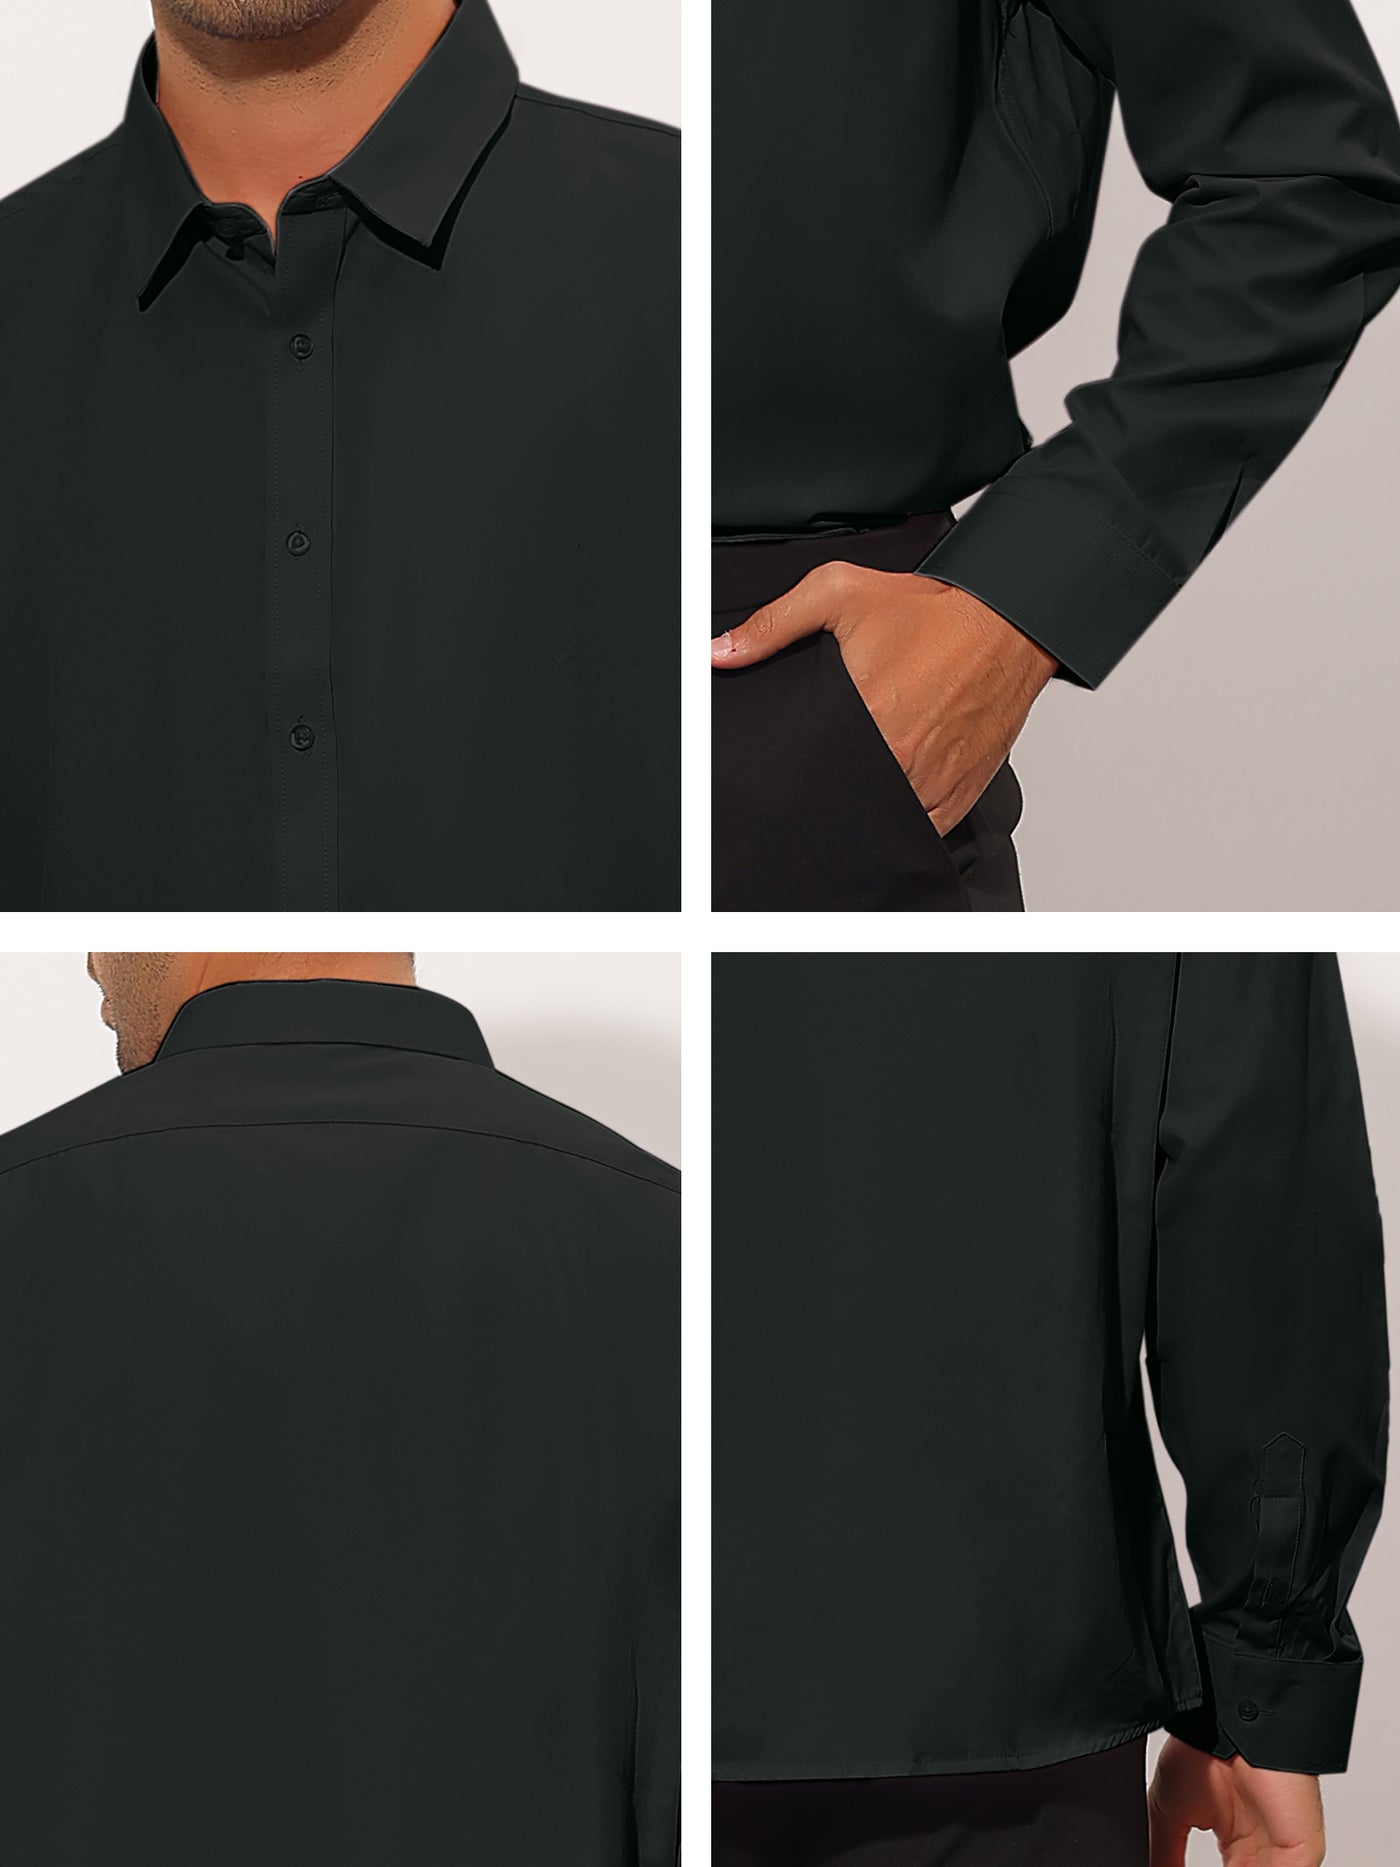 Bublédon Men's Regular Fit Solid Button Down Long Sleeves Business Dress Shirt